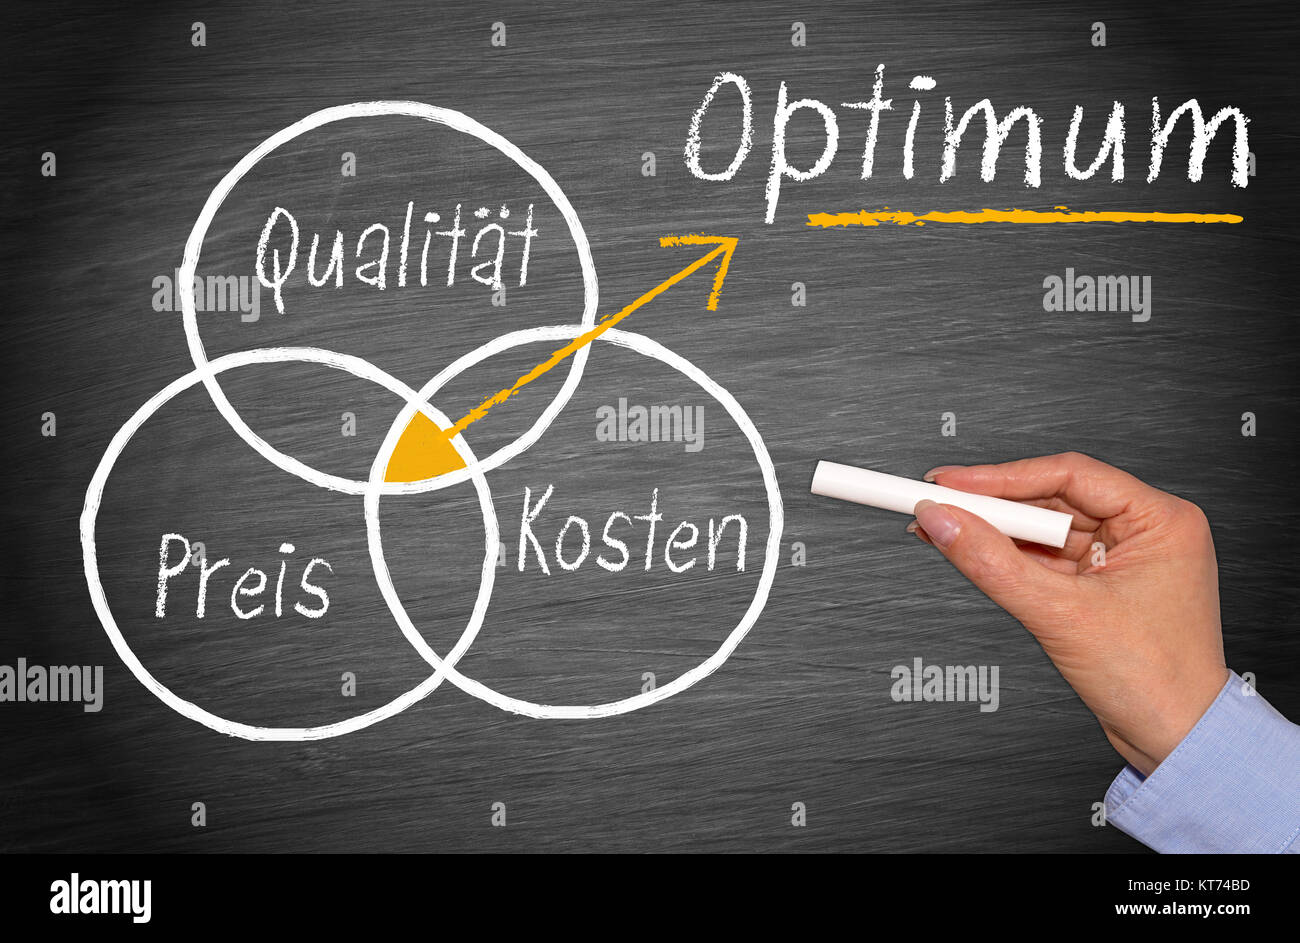 Qualität, Preis, Kosten - das Optimum - Marketing Strategie Konzept Stock Photo